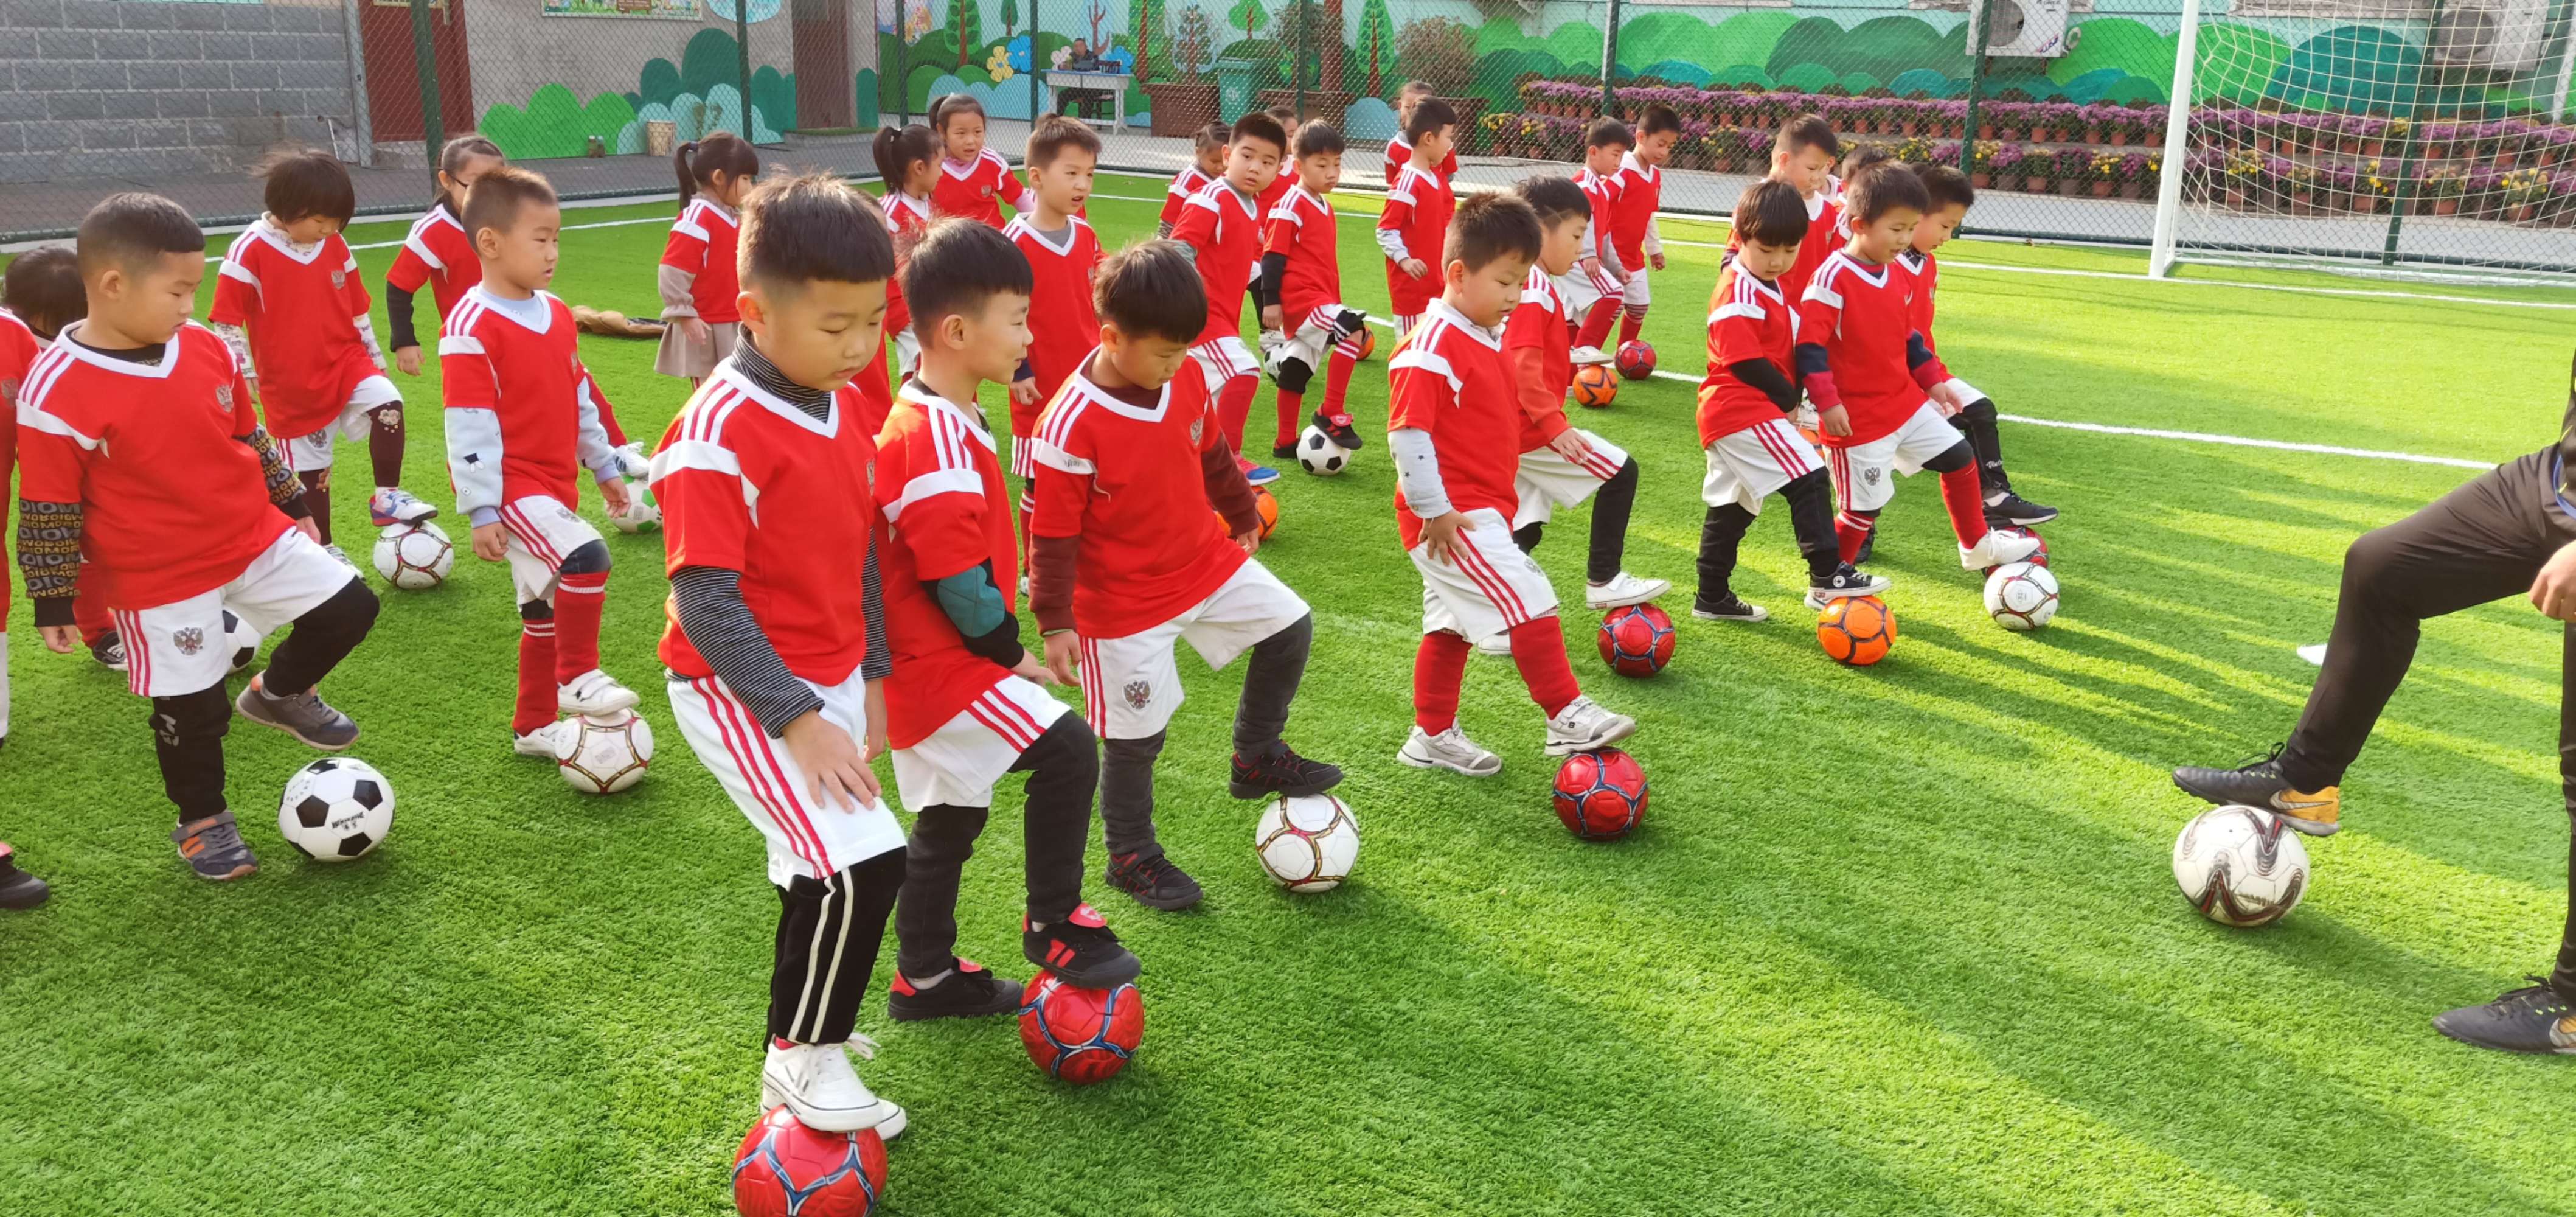 教育部发布《关于开展2021年全国足球特色幼儿园创建工作的通知》